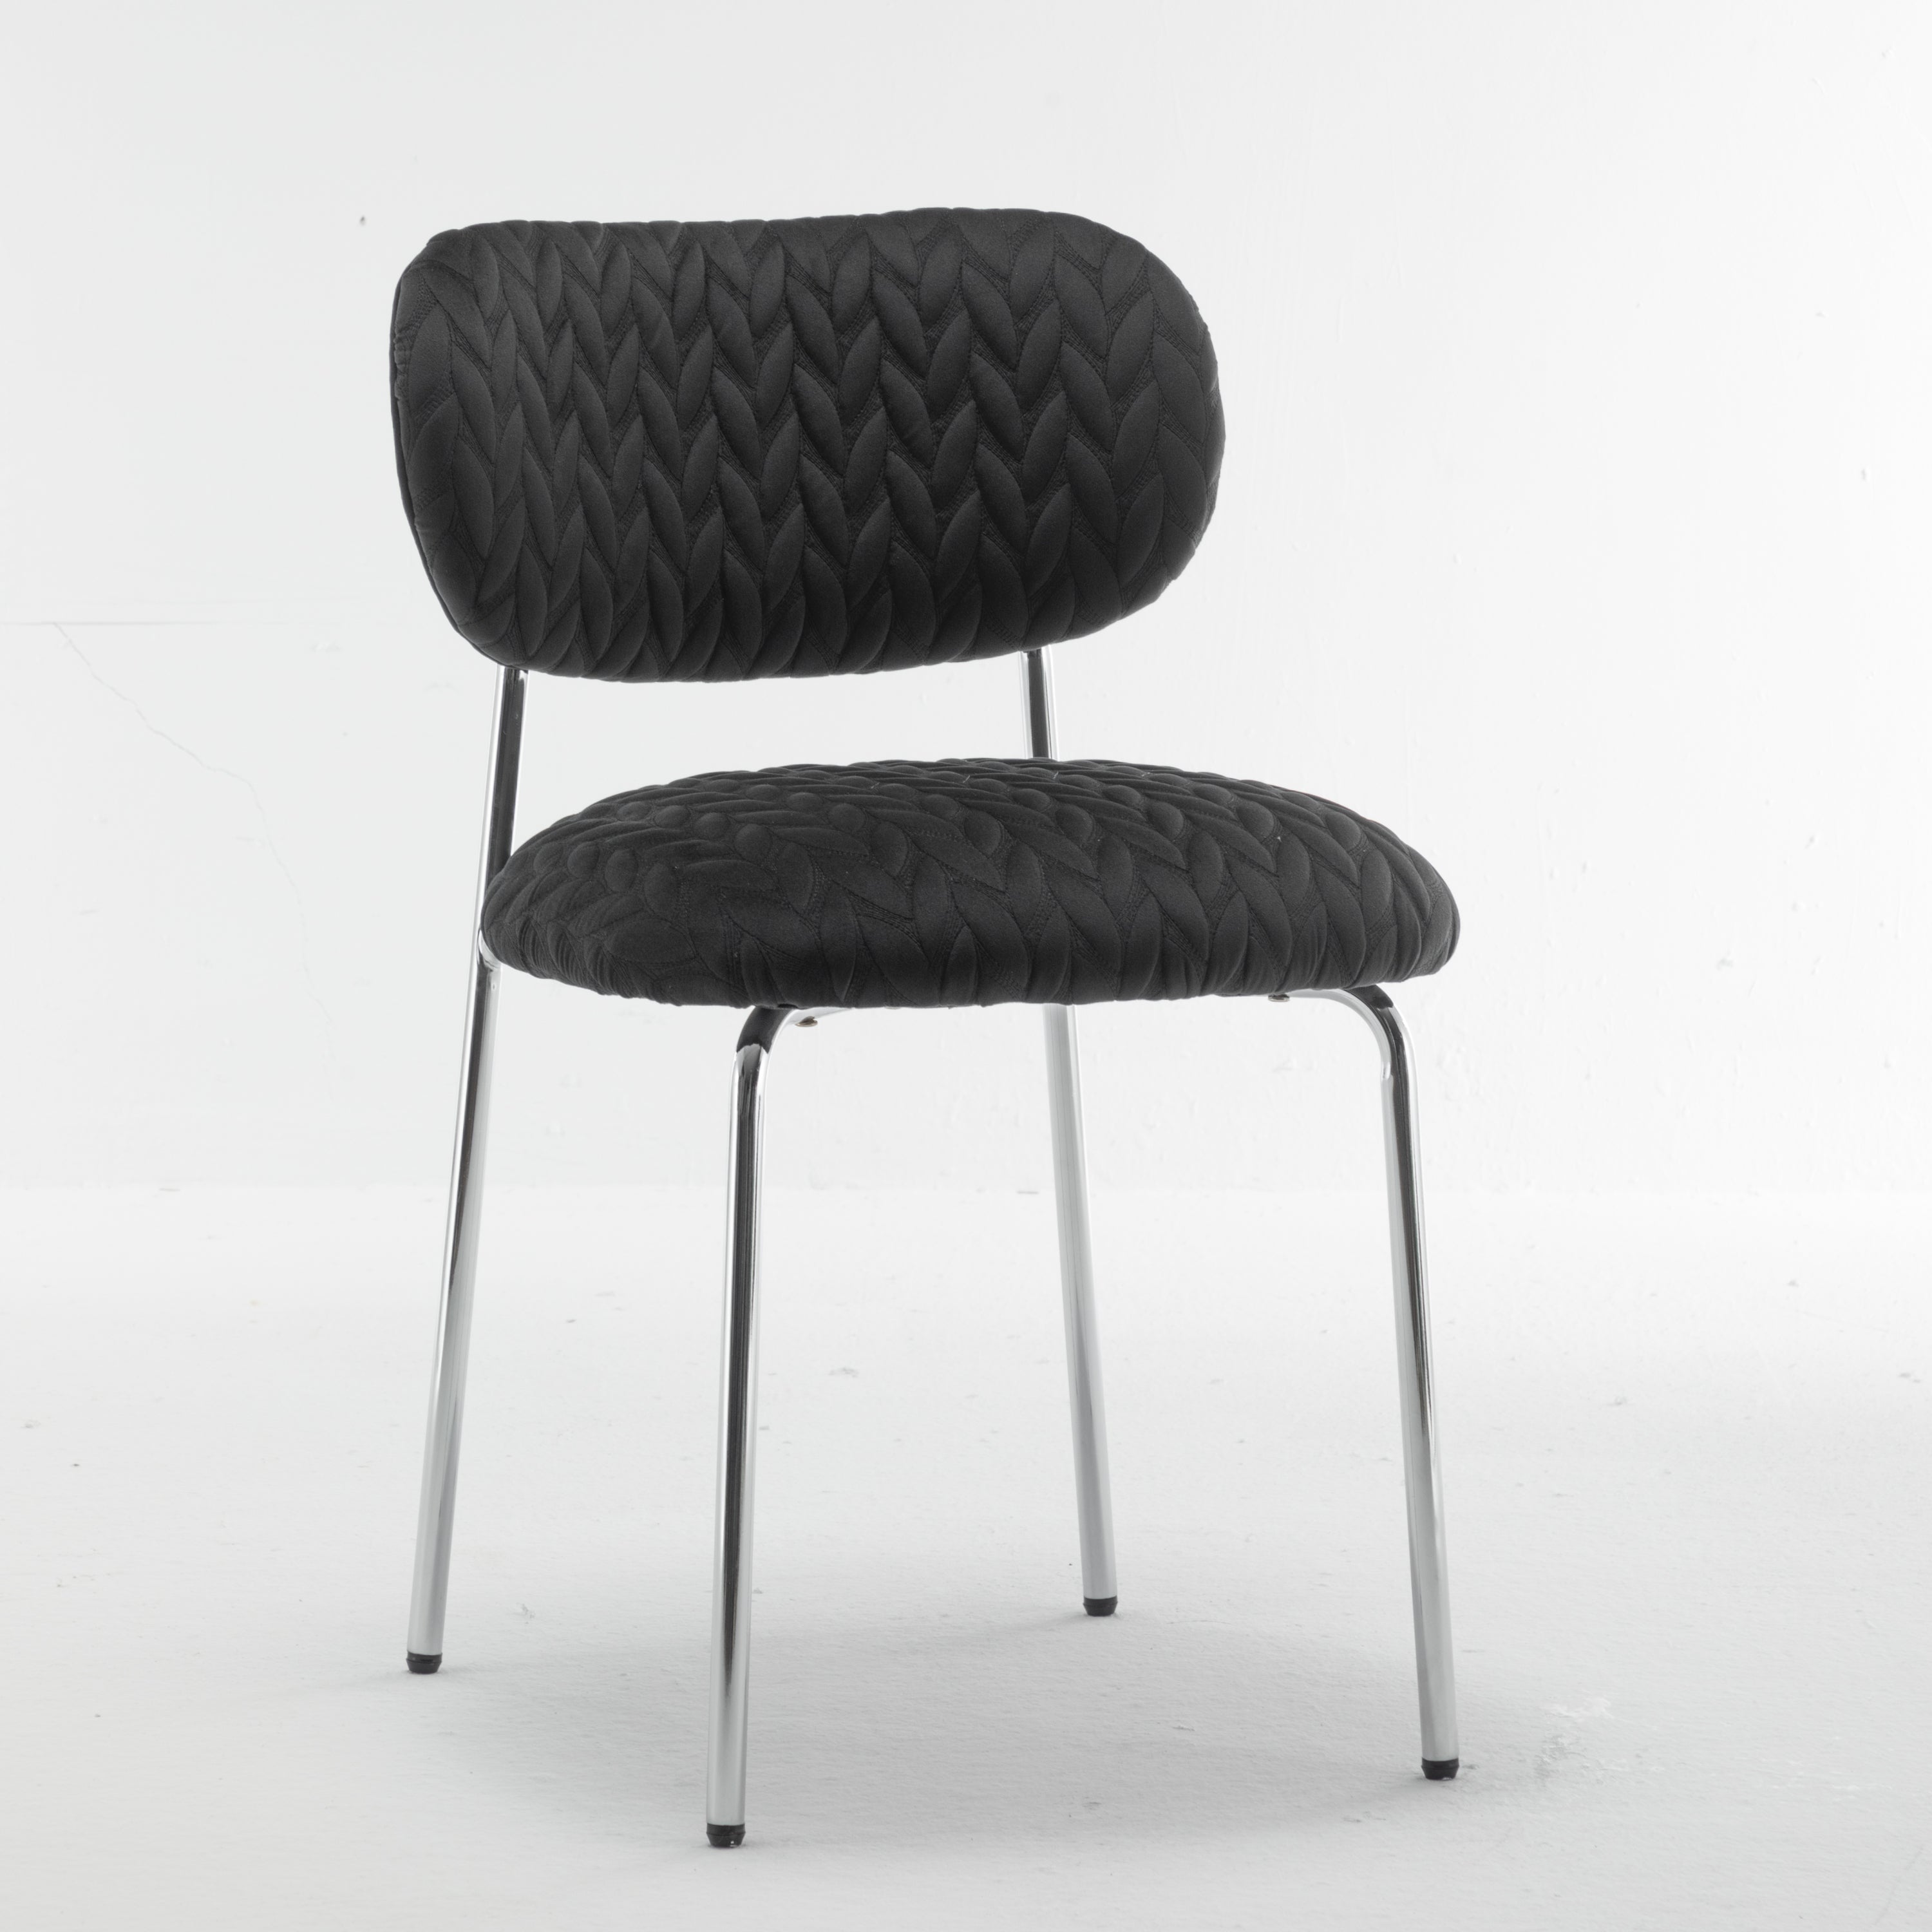 Velvet Dining Chair Leaf Grain Ergonomic Backrest Silver Metal Legs (Set of 2) - Black